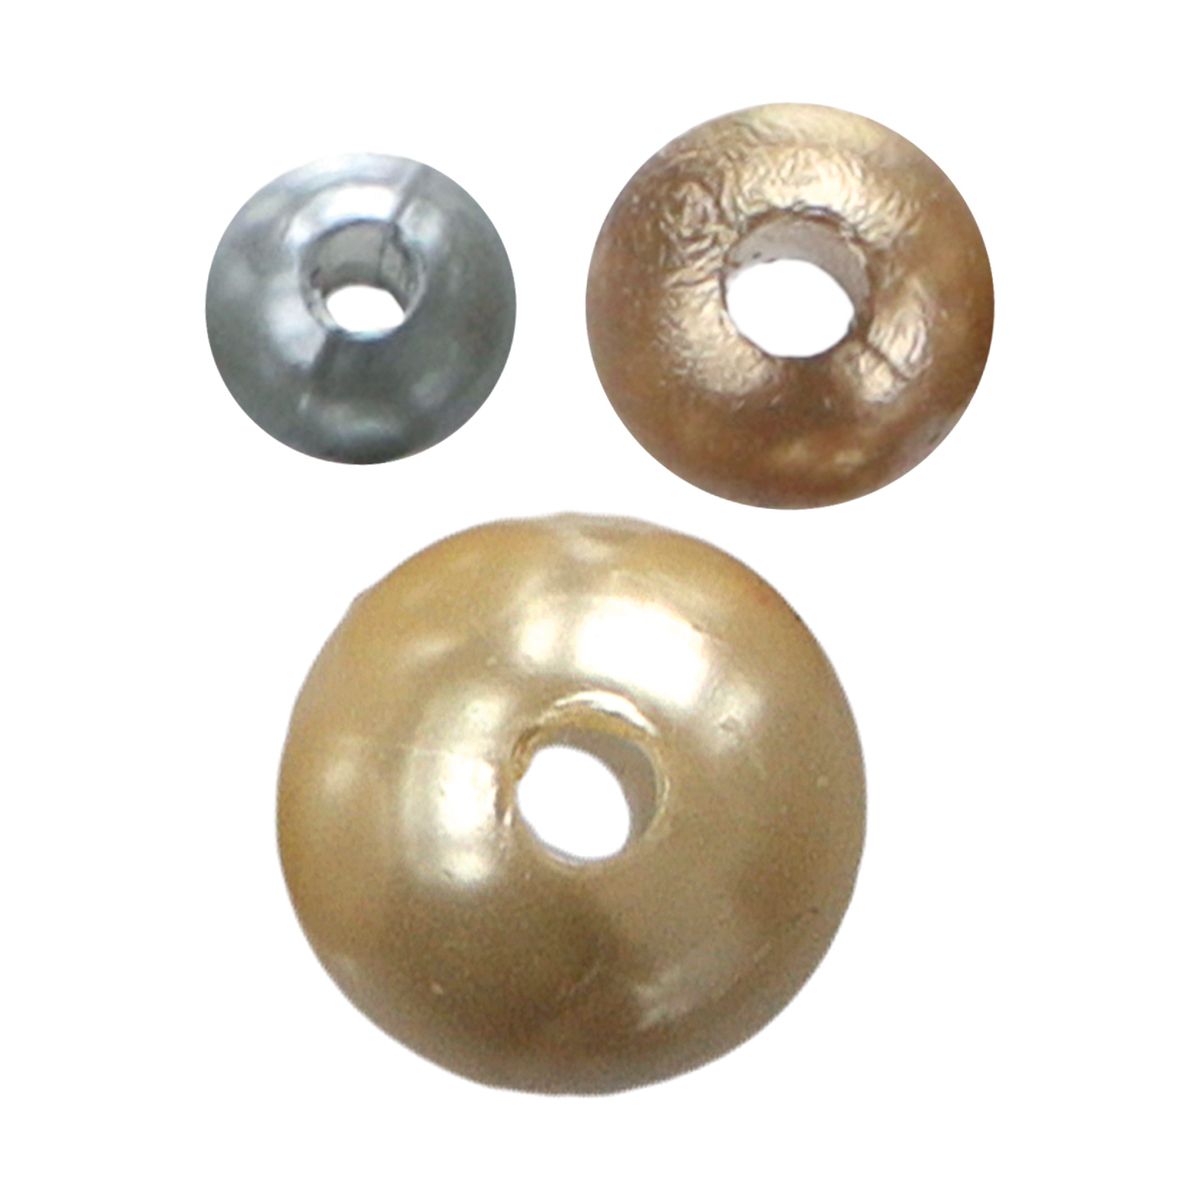 Perełki Titanum Craft-Fun Series srebrne, miedziane, kość słoniowa mix (5047)